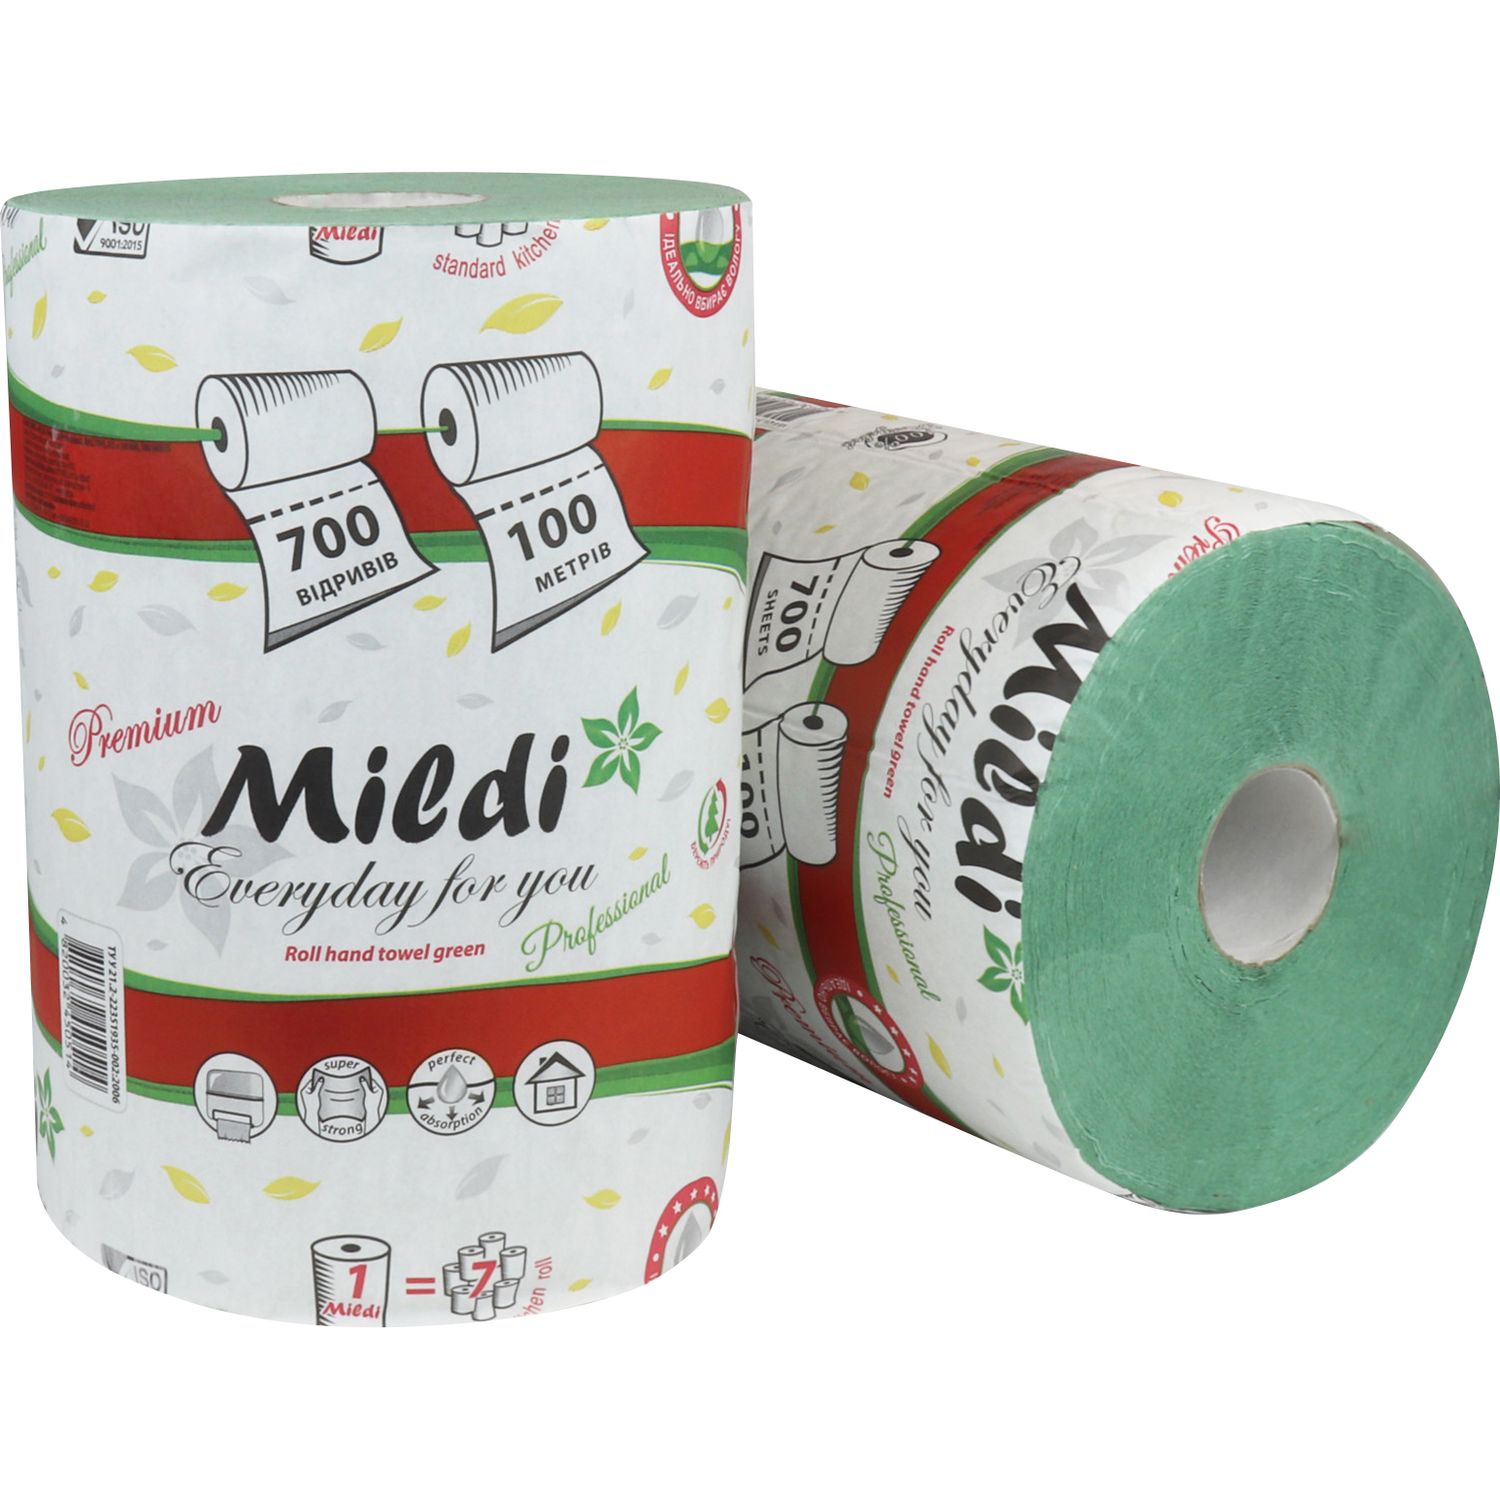 Бумажные полотенца Mildi Premium однослойные 100 метров 700 отрывов зеленые - фото 2